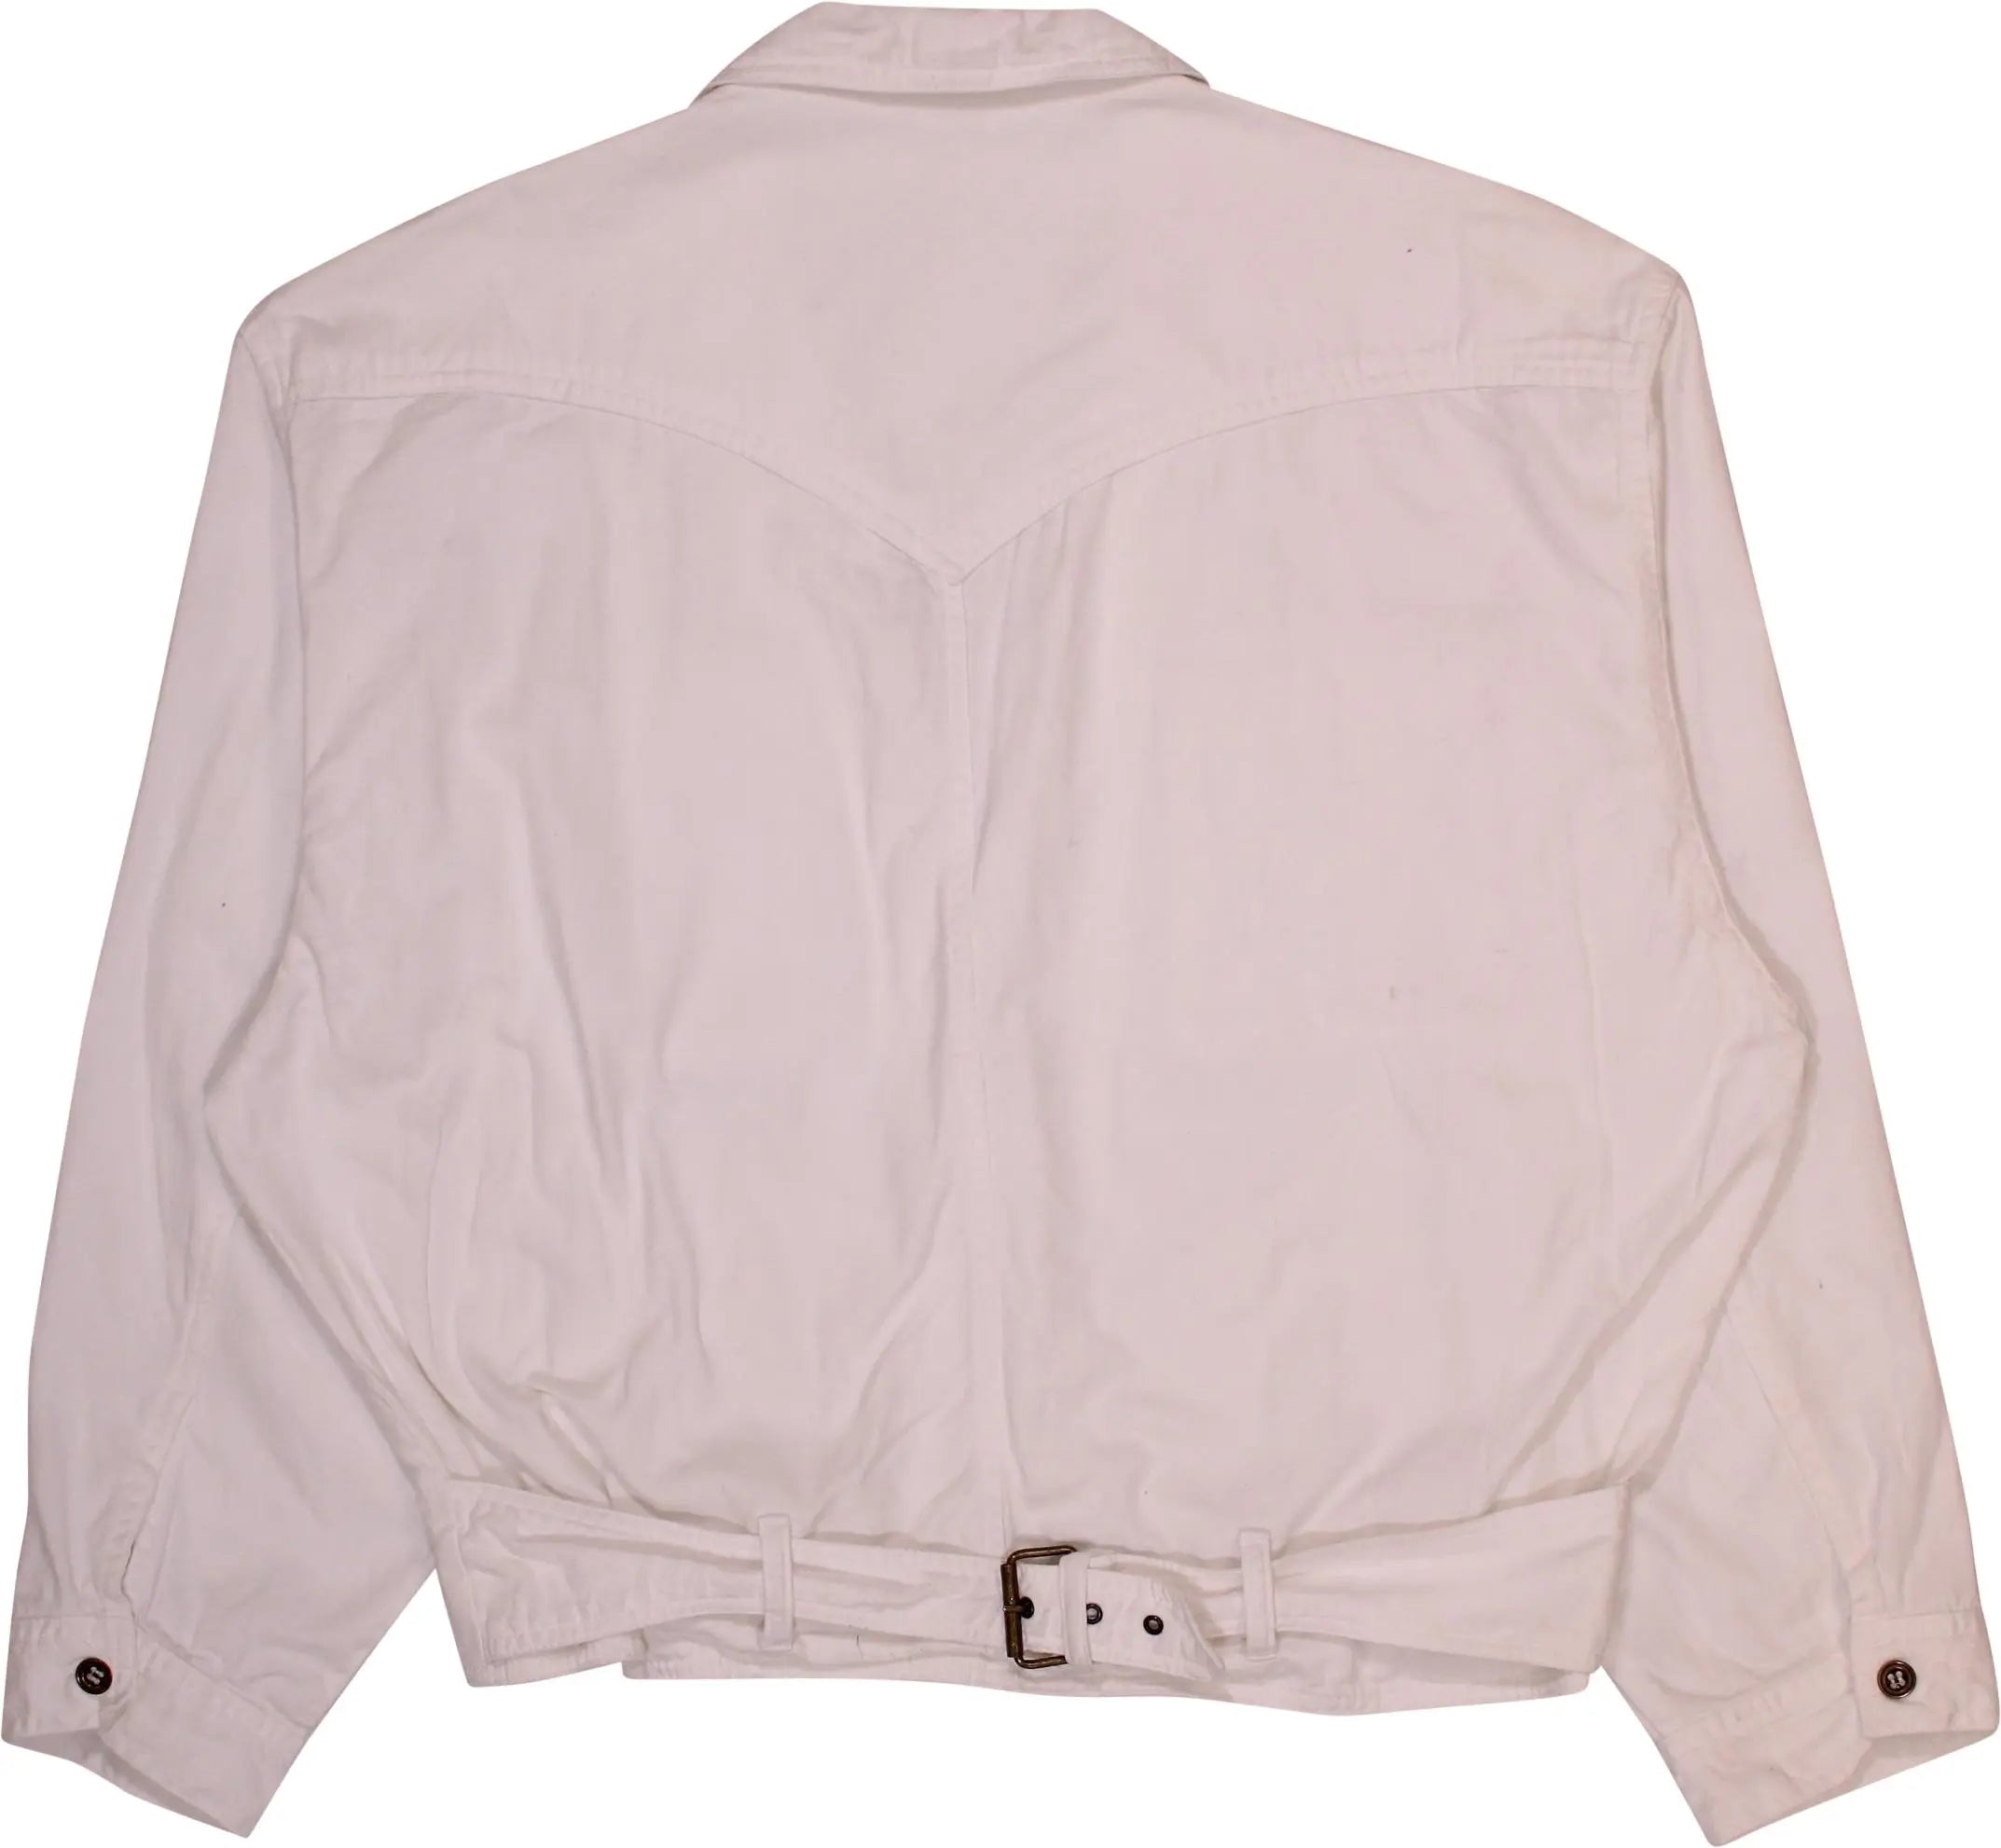 Vinus - Vintage White Denim Jacket- ThriftTale.com - Vintage and second handclothing